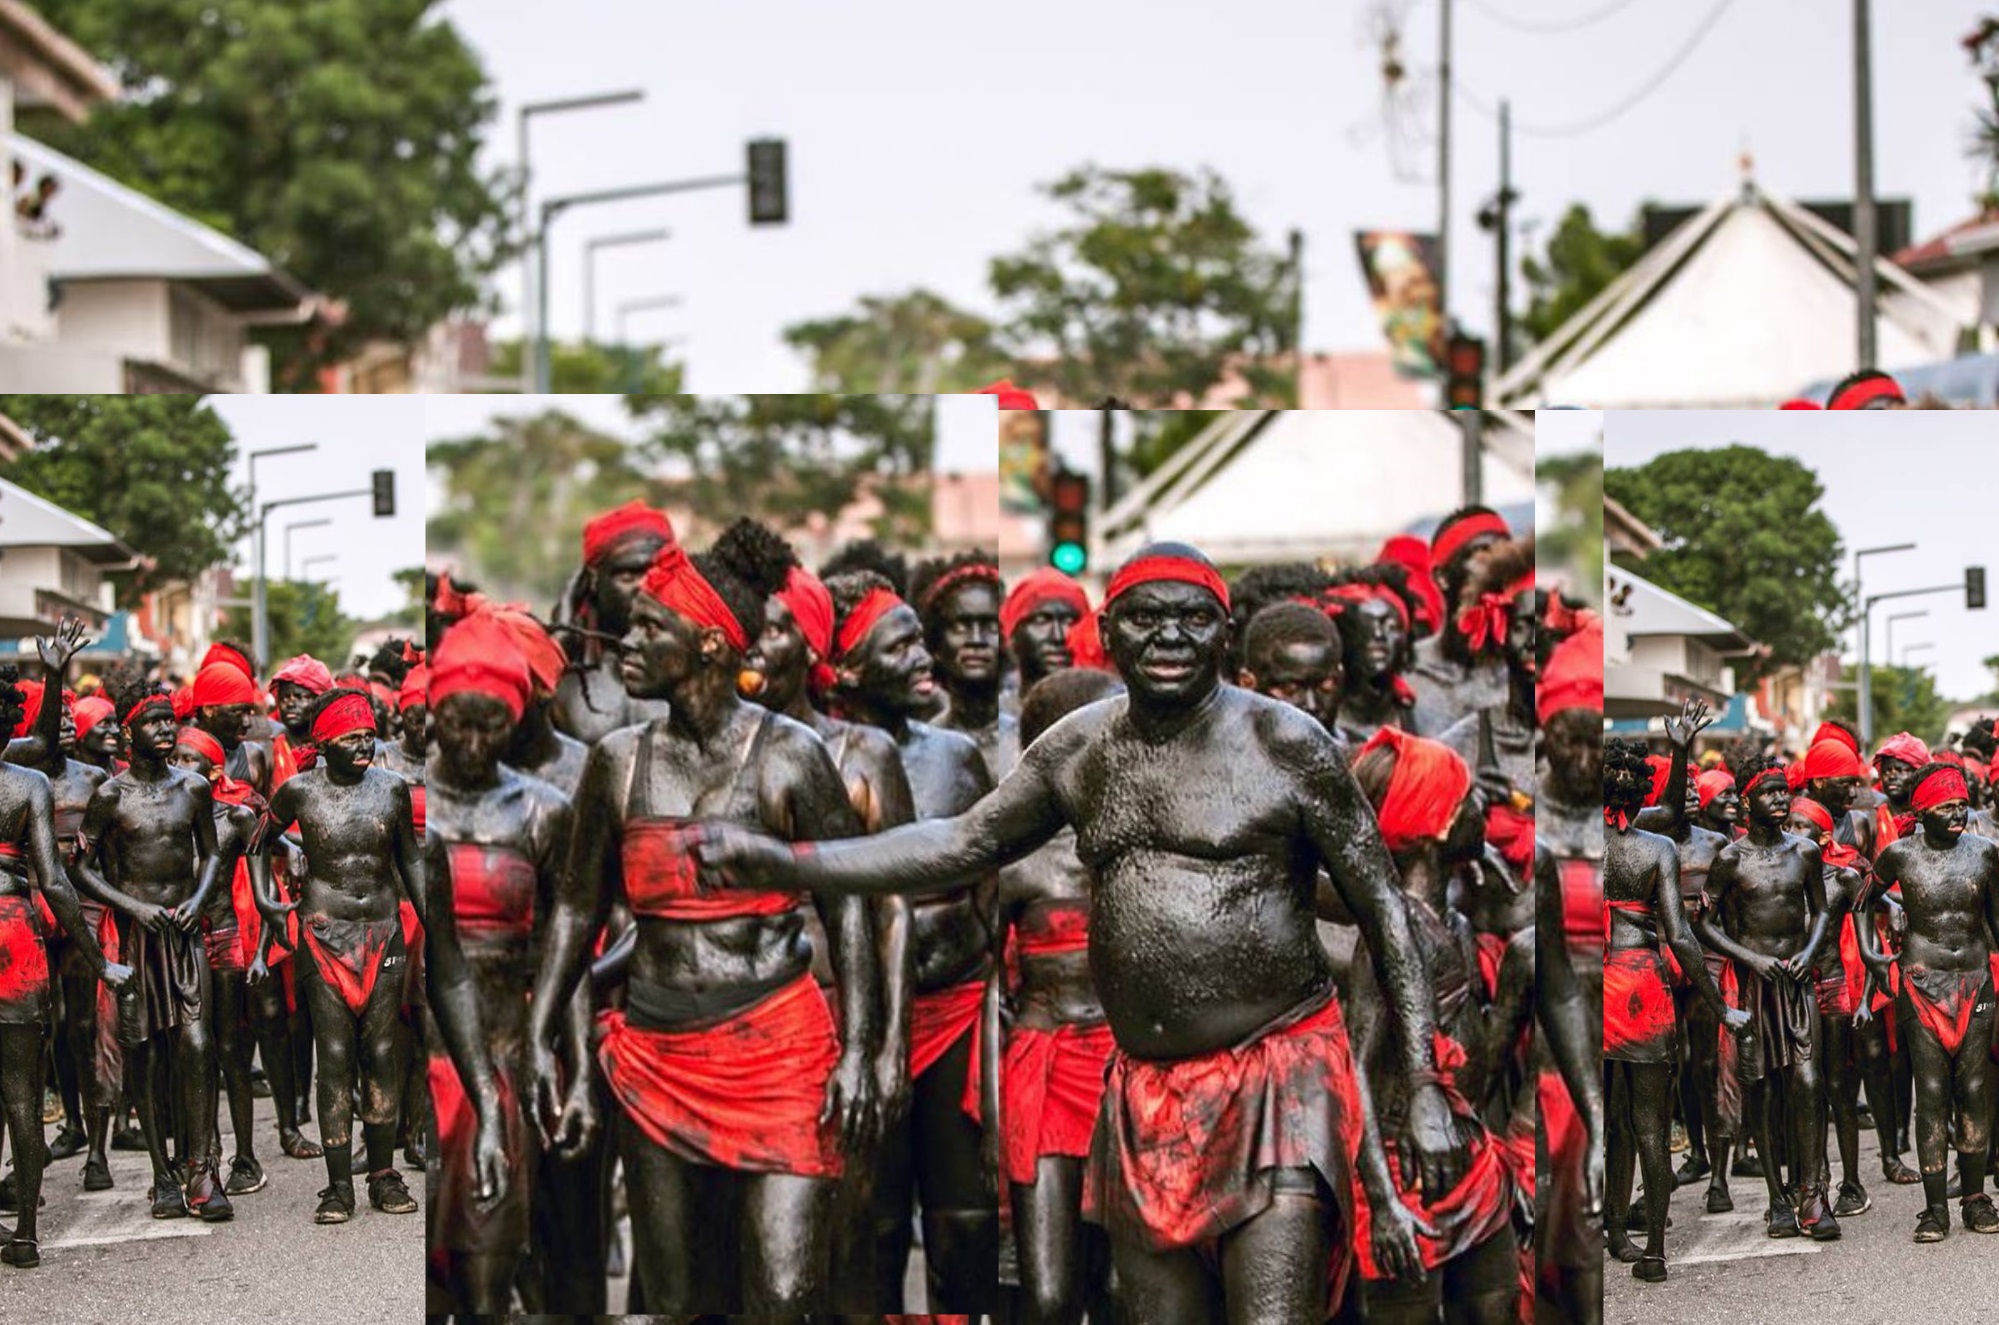 Carnaval : Mas-a-kongo, a lous, gwo-siwo, couleur de résistance, culte ancestral, l’héritage des Hommes libres